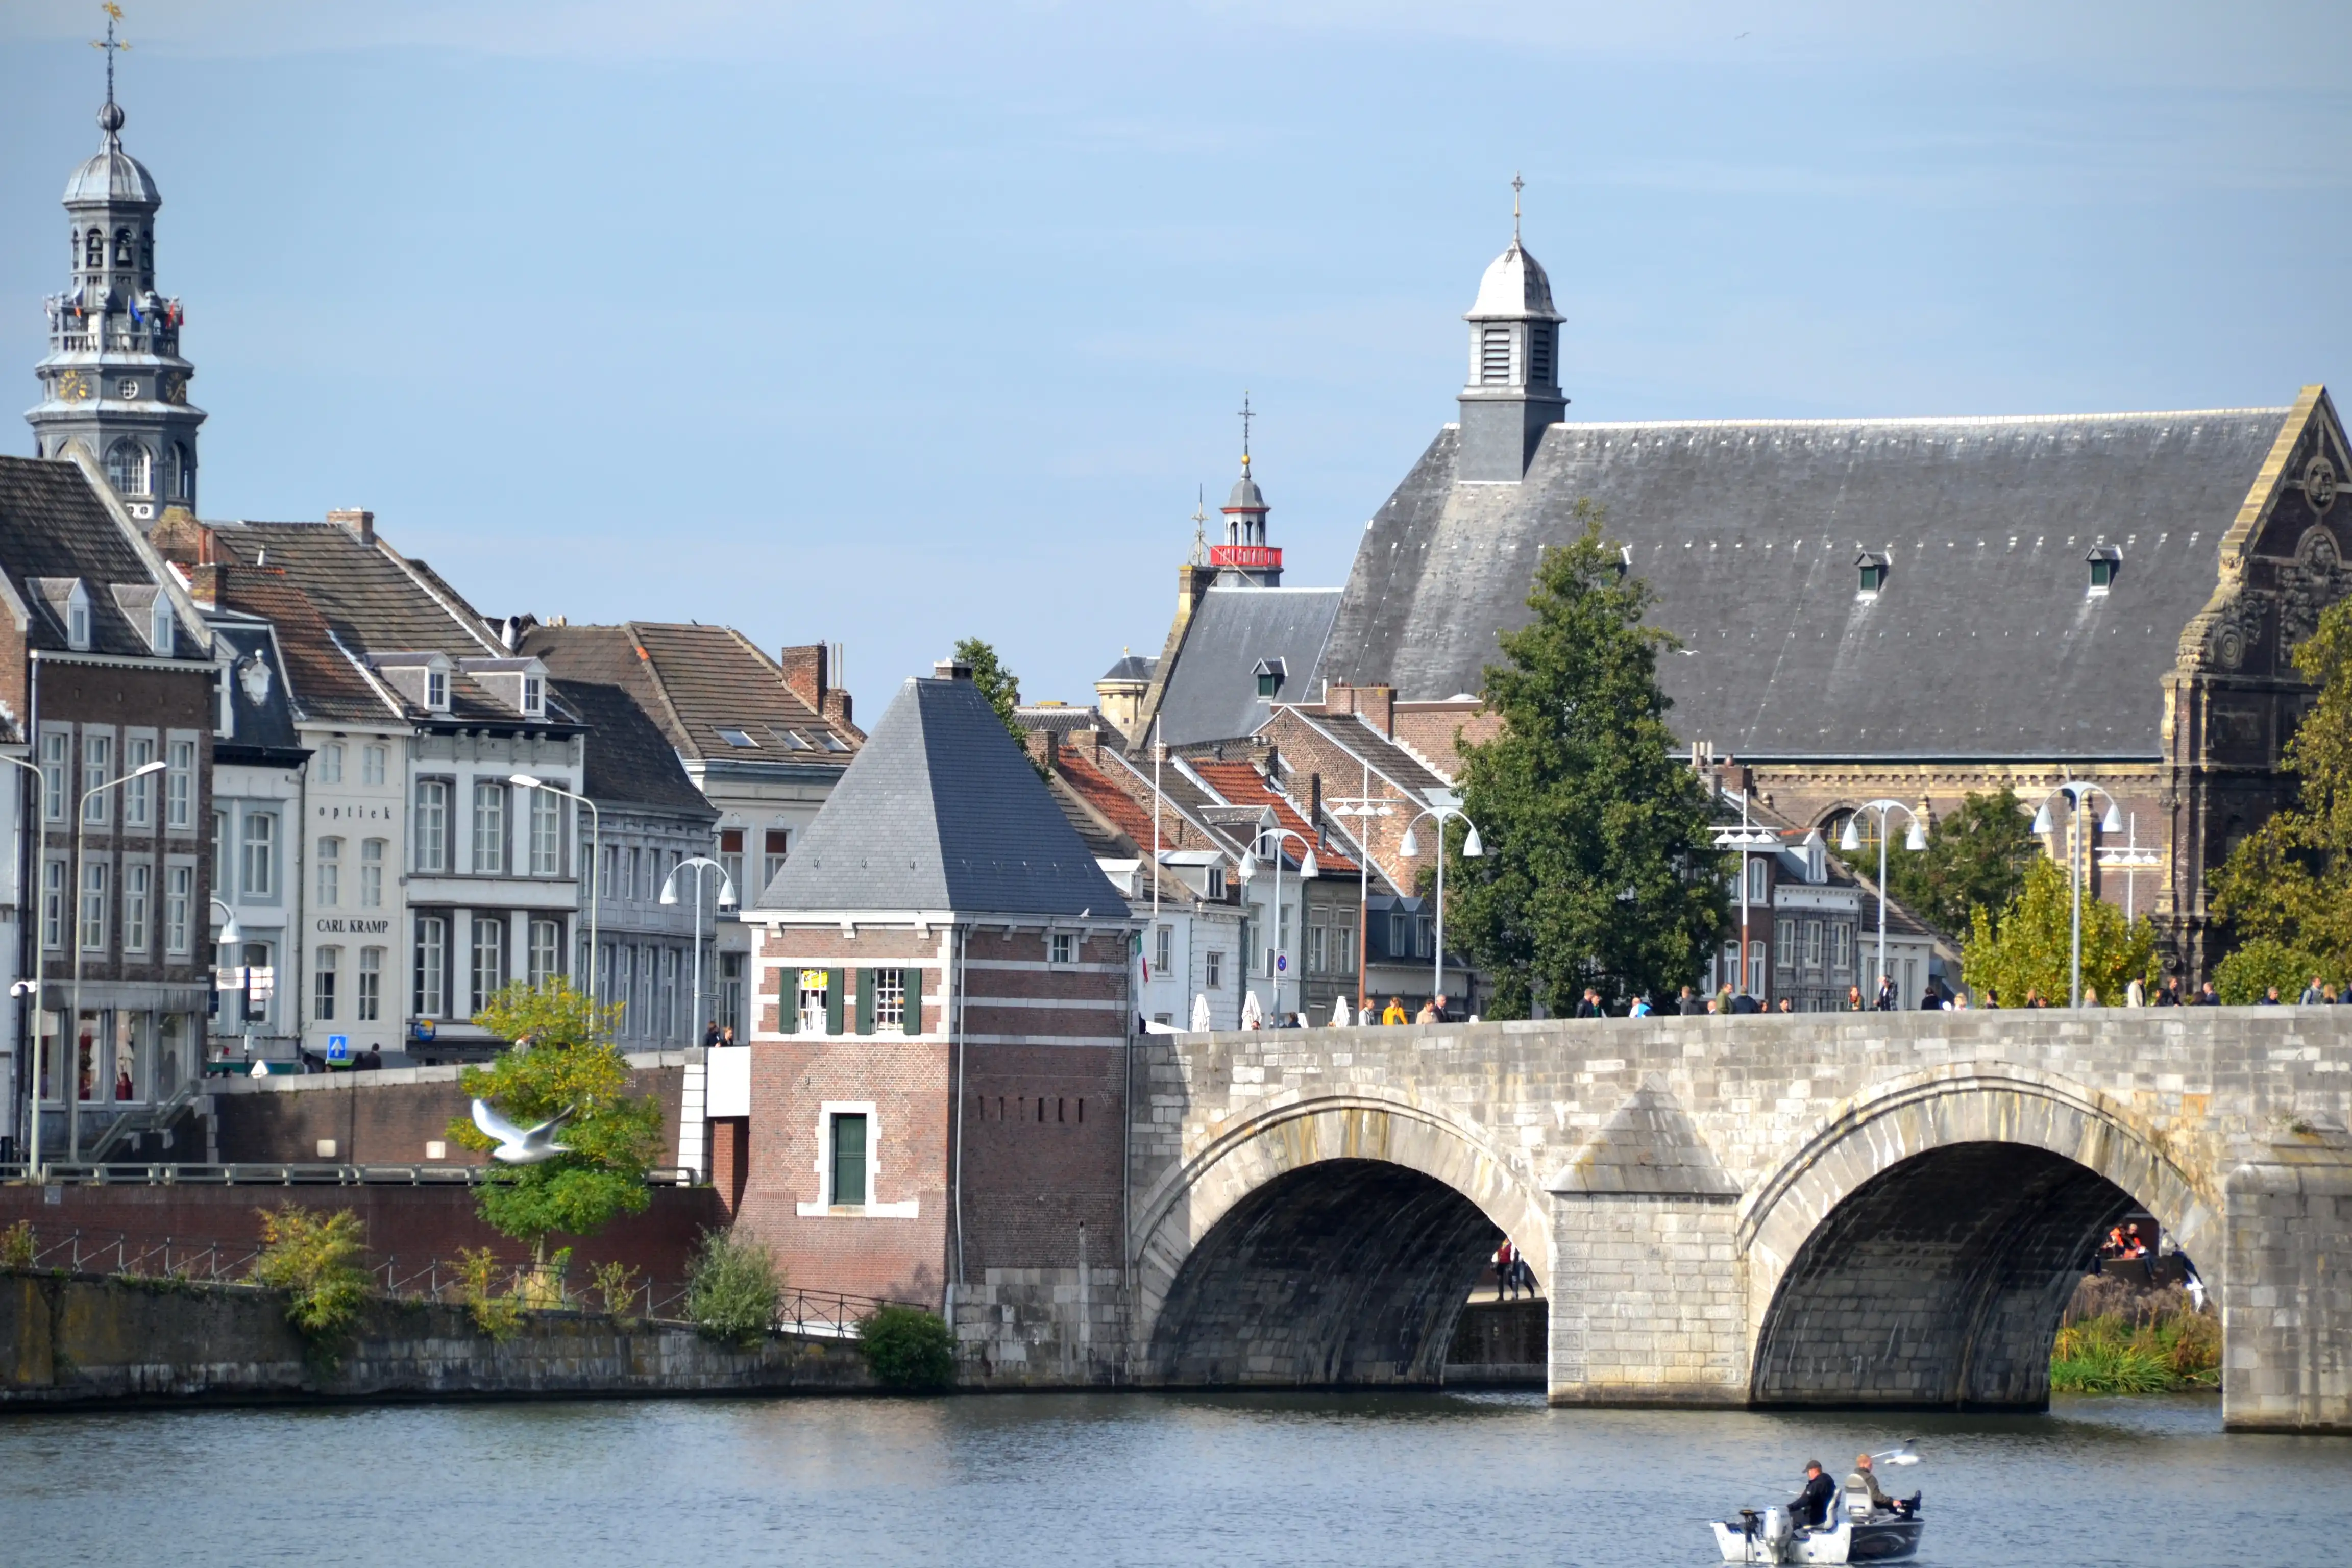 Maastricht tourism